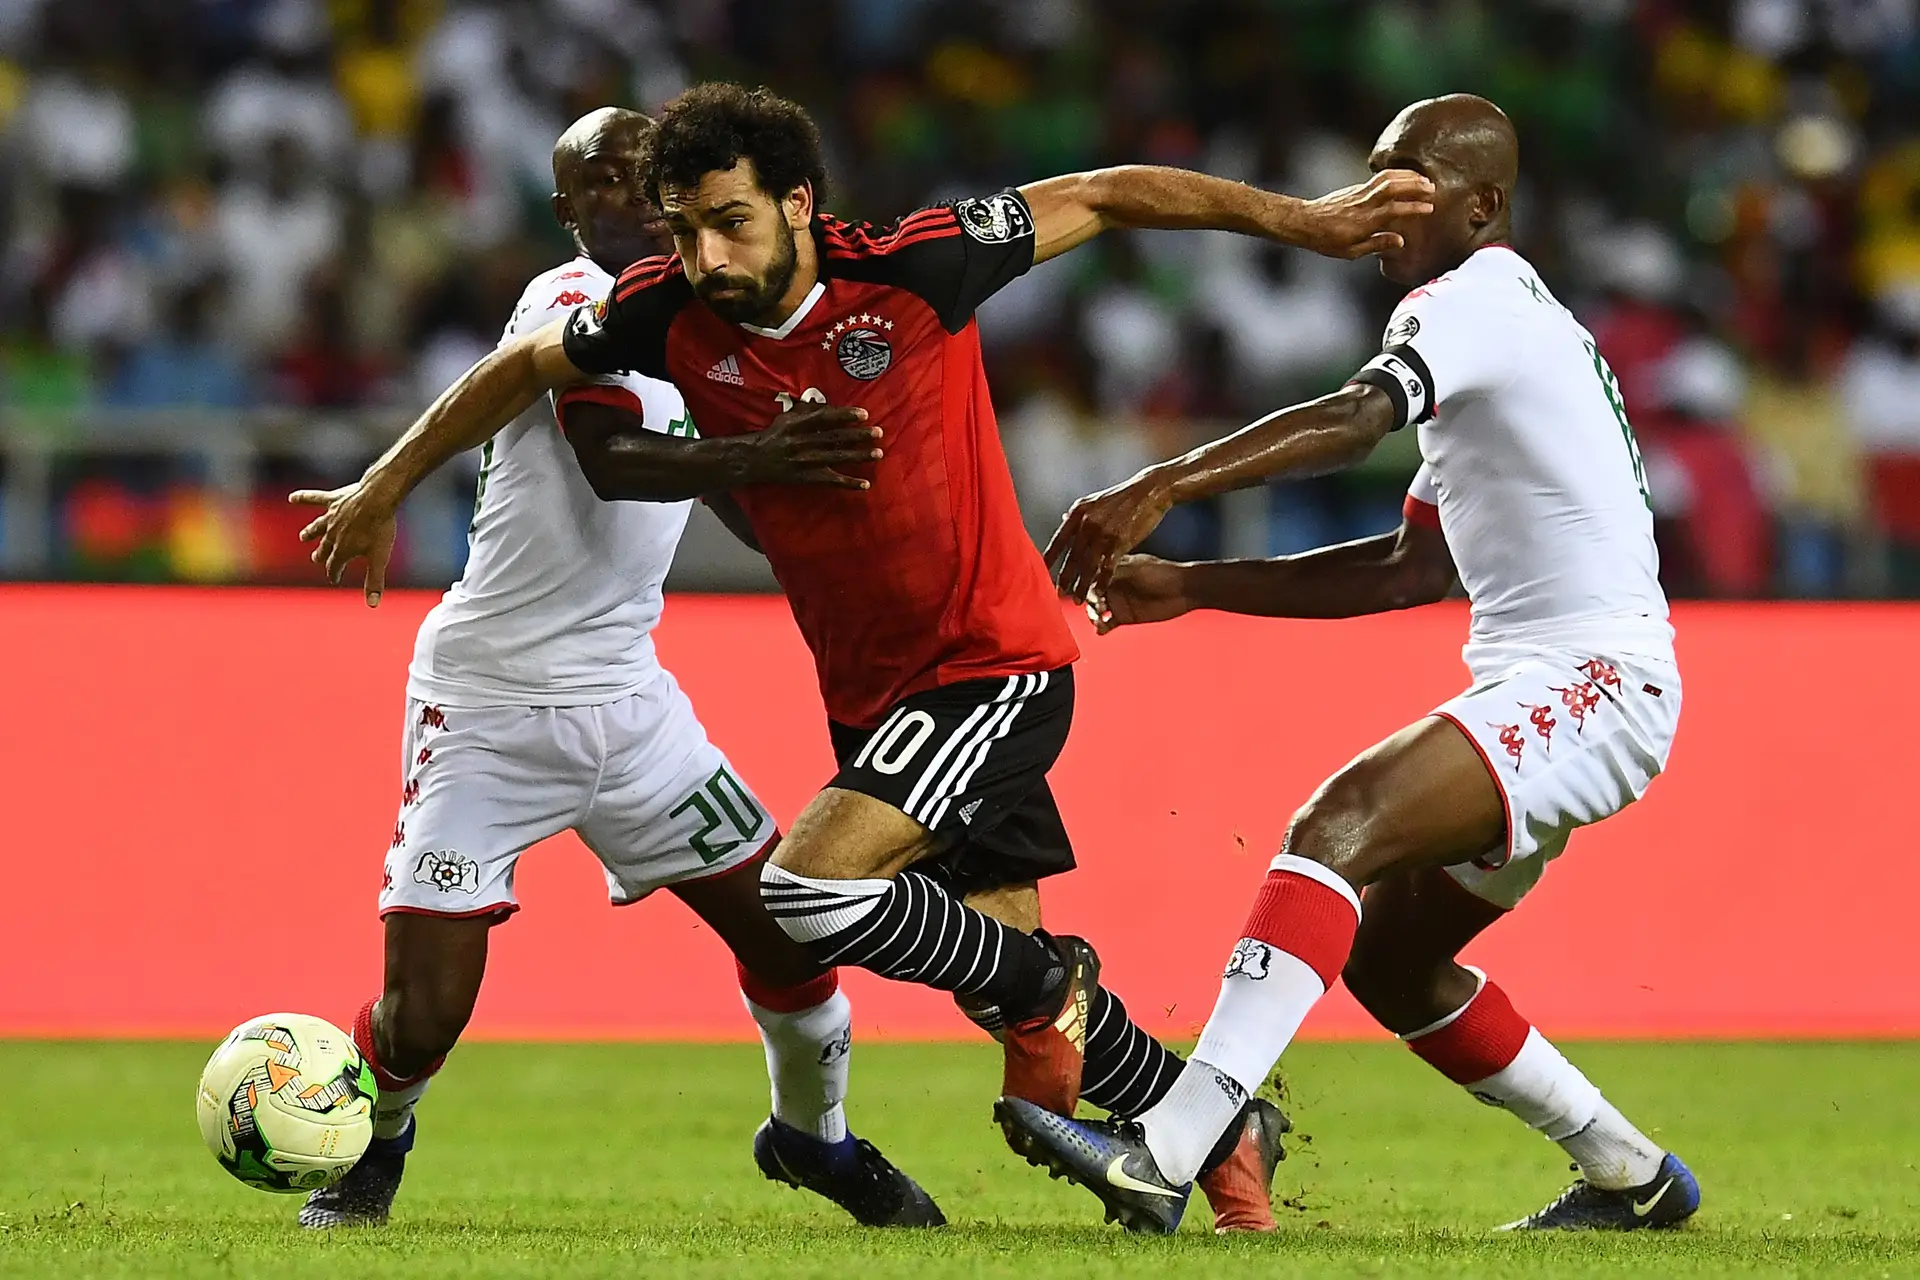 Mané se torna dúvida para a Copa e repete filme de Salah quatro